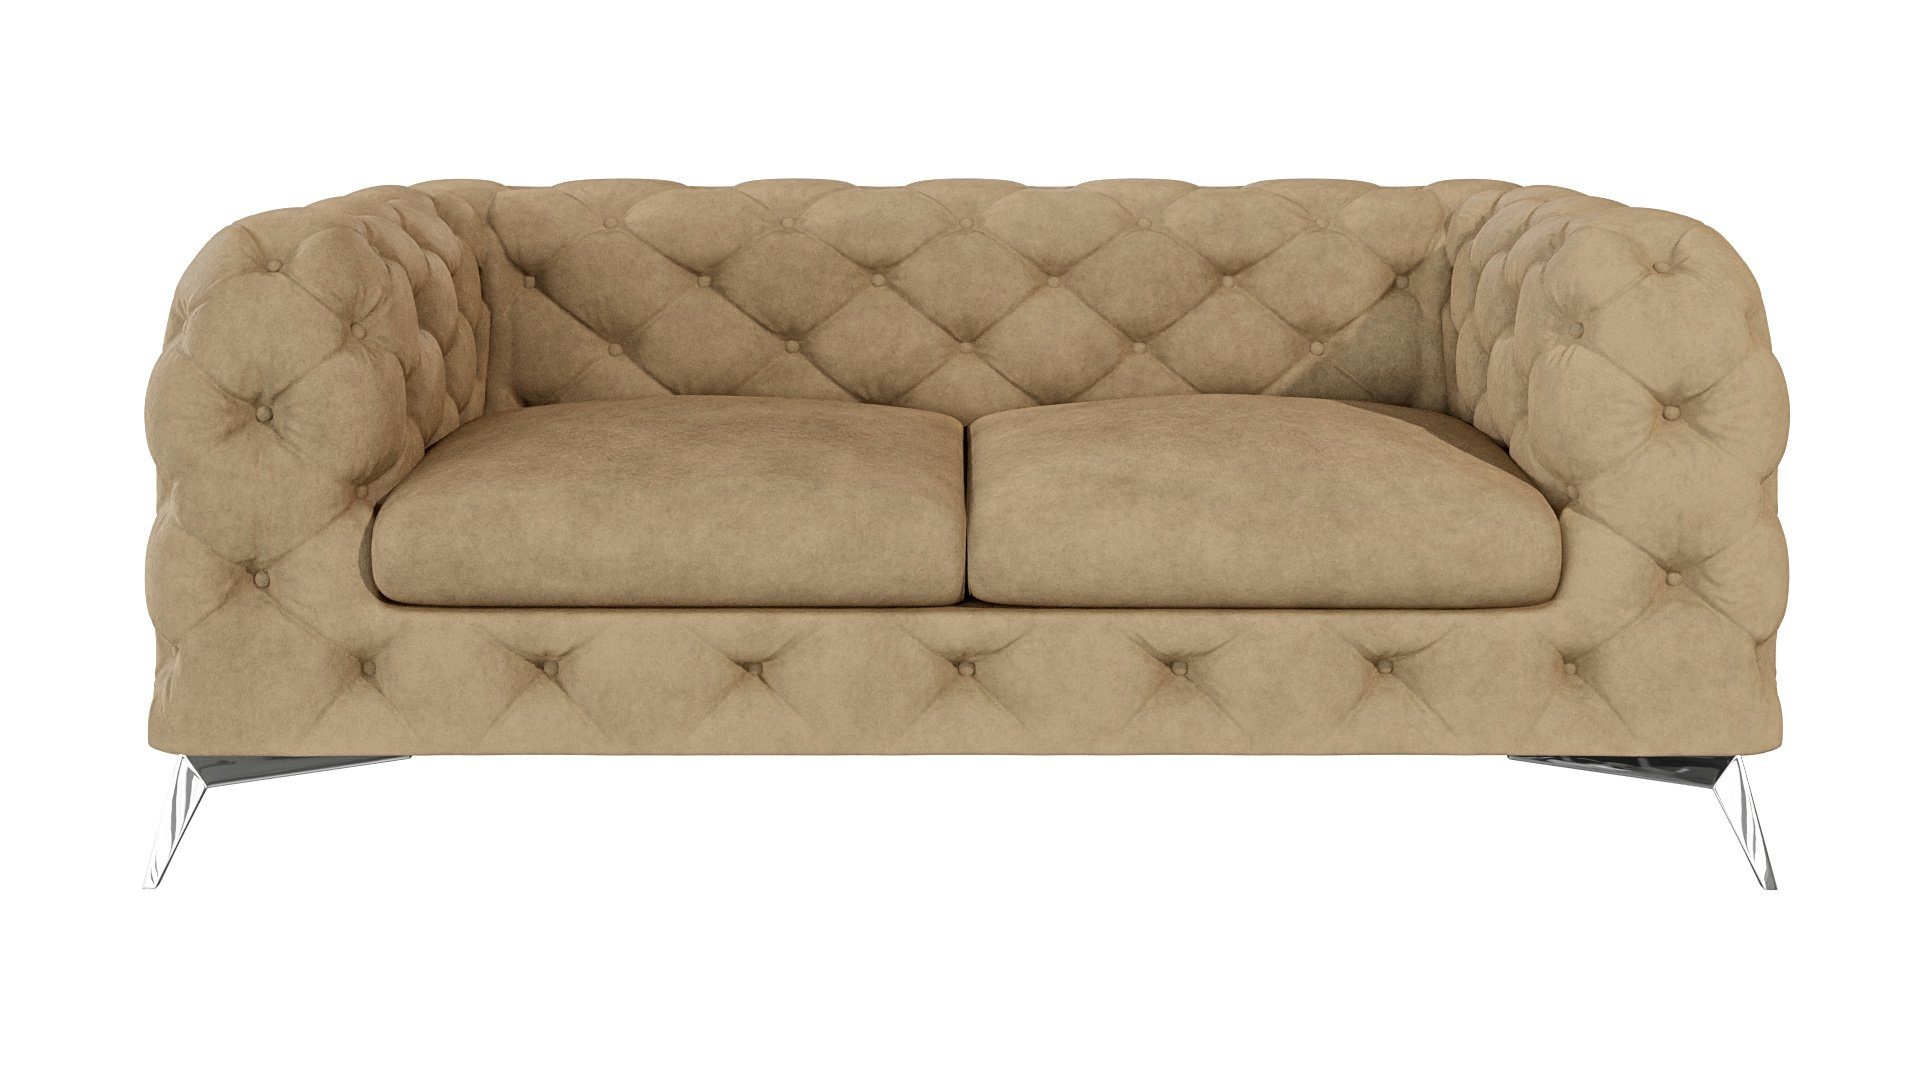 Beige Chesterfield mit 2-Sitzer Möbel Wellenfederung mit Füßen, Kalina Silber Metall S-Style Sofa